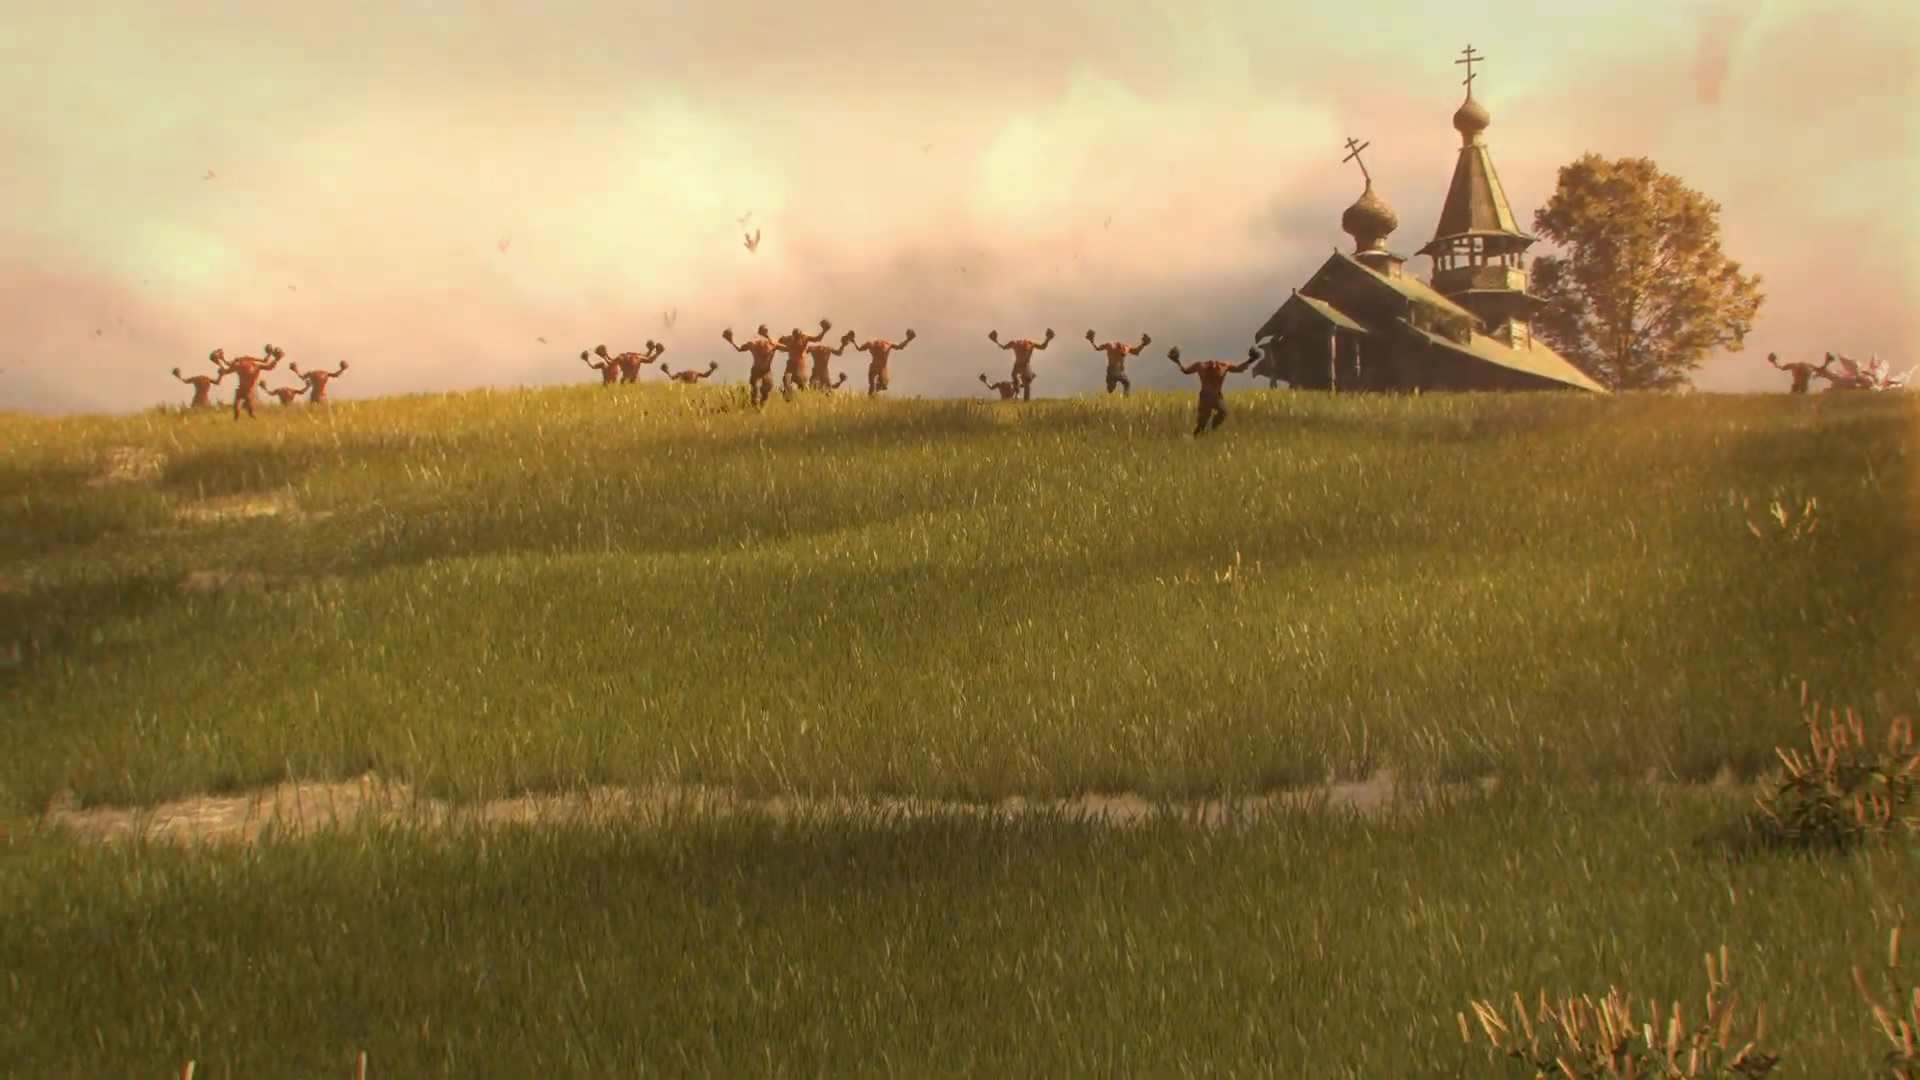 《英雄薩姆:西伯利亞狂想曲》登陸PC發售預告片公布